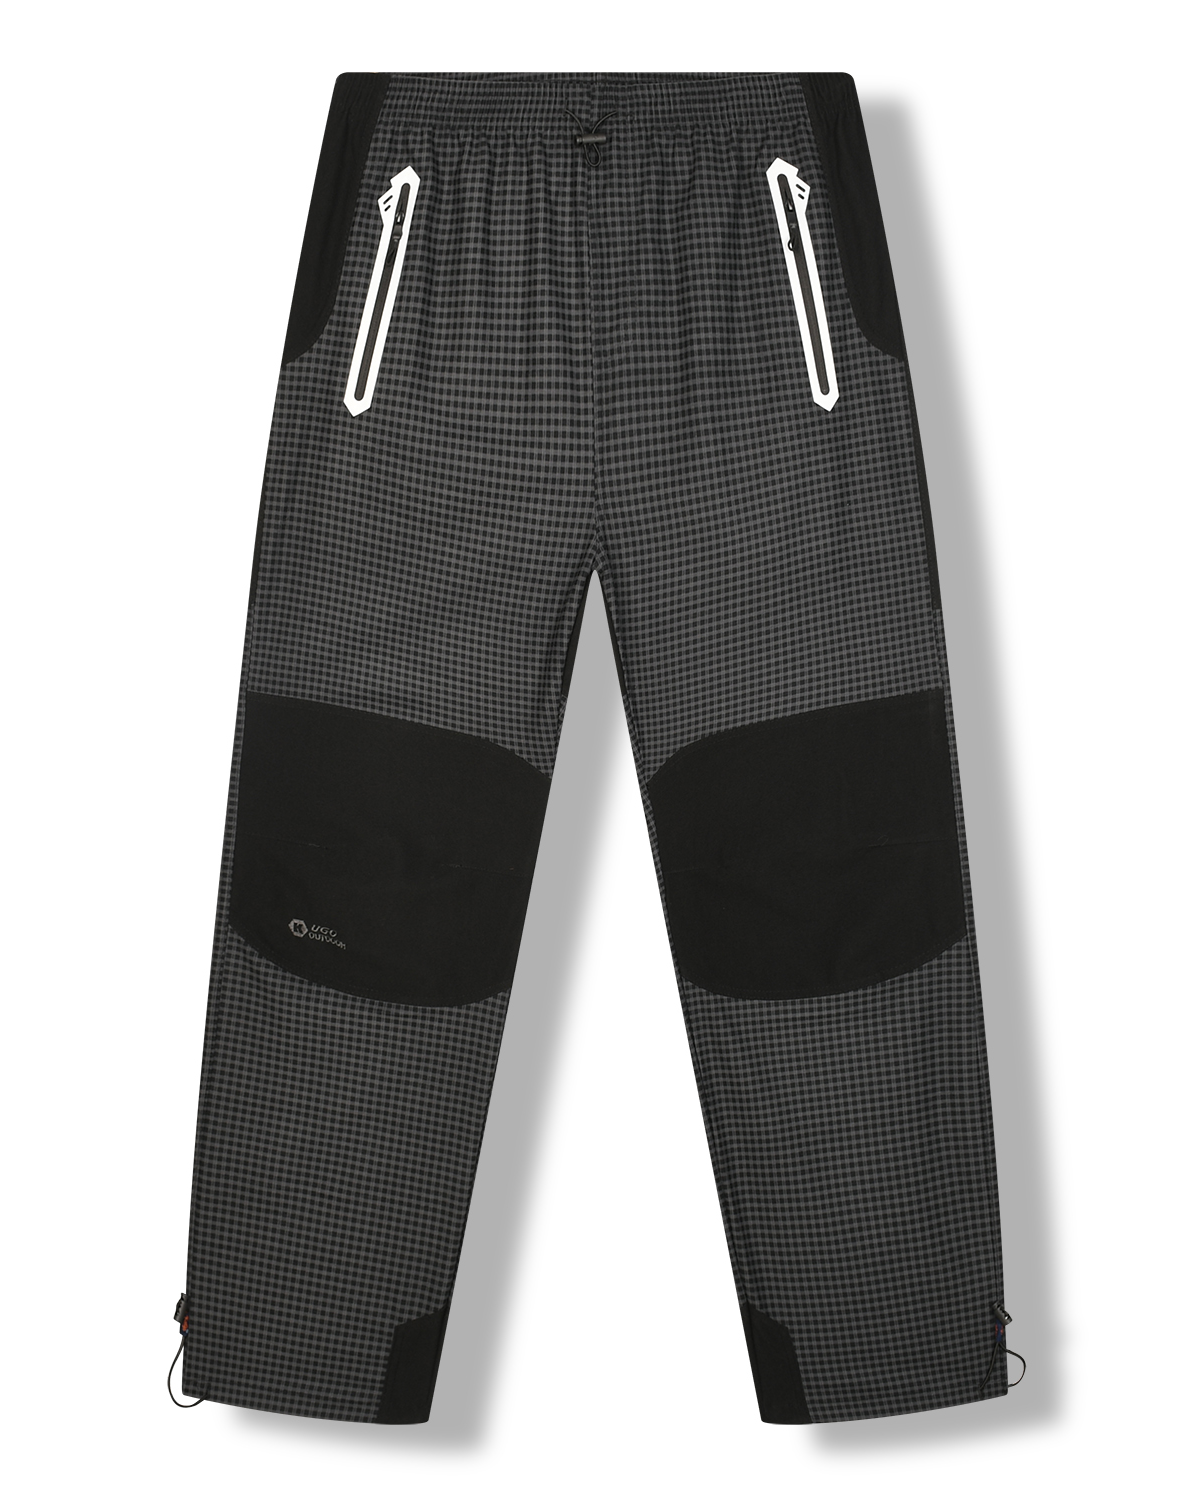 Pánské outdoorové kalhoty - KUGO G8555, šedá Barva: Šedá, Velikost: 3XL